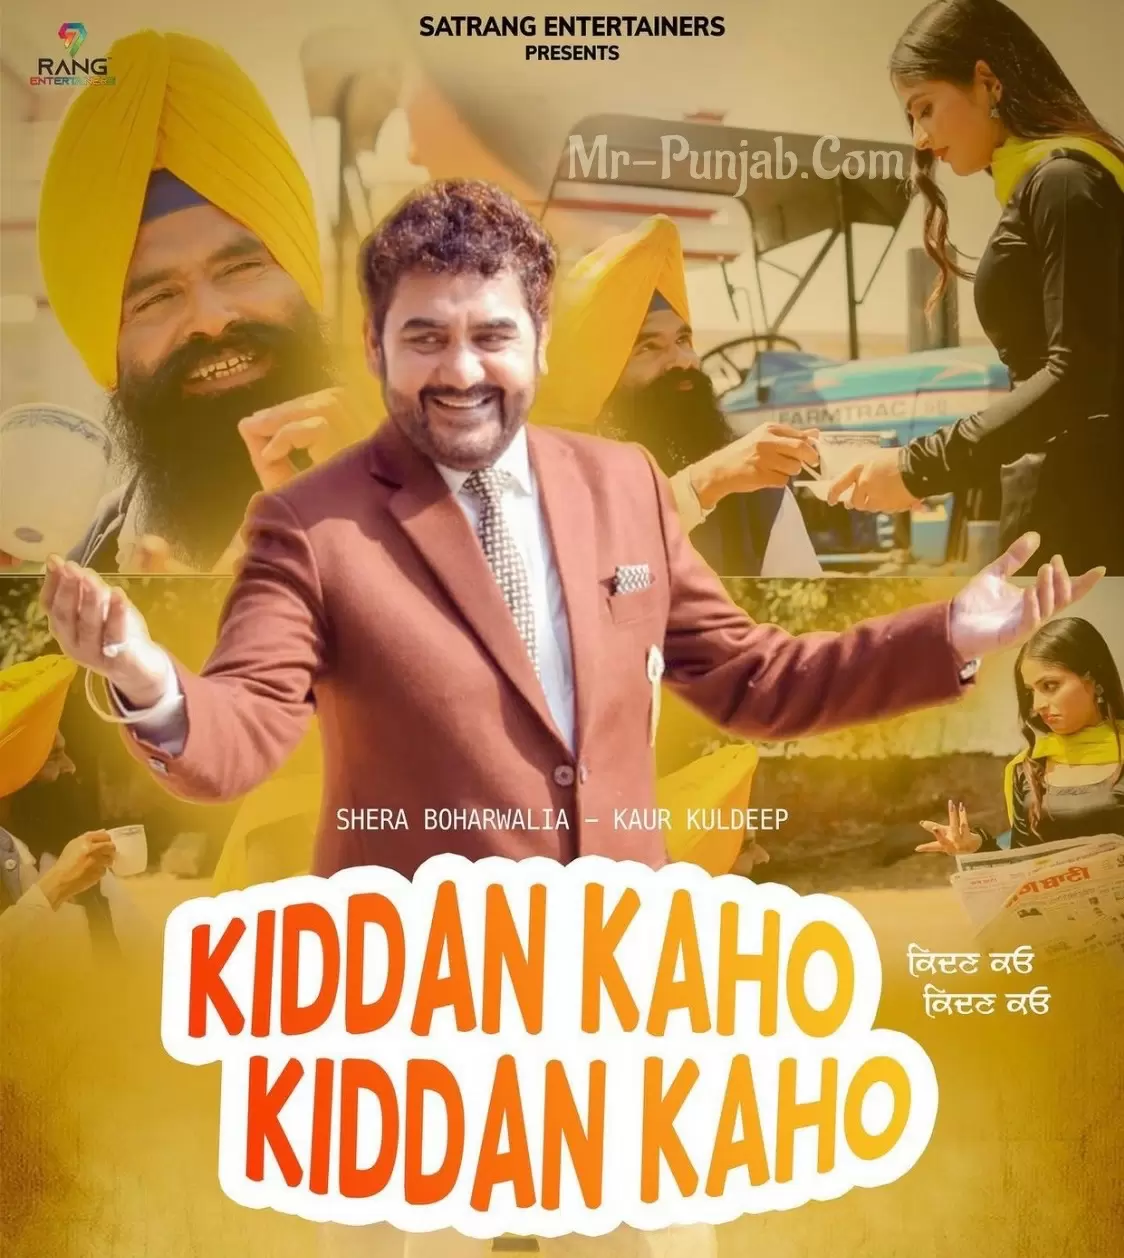 Kiddan Kaho Kiddan Kaho Shera Boharwalia Mp3 Download Song - Mr-Punjab